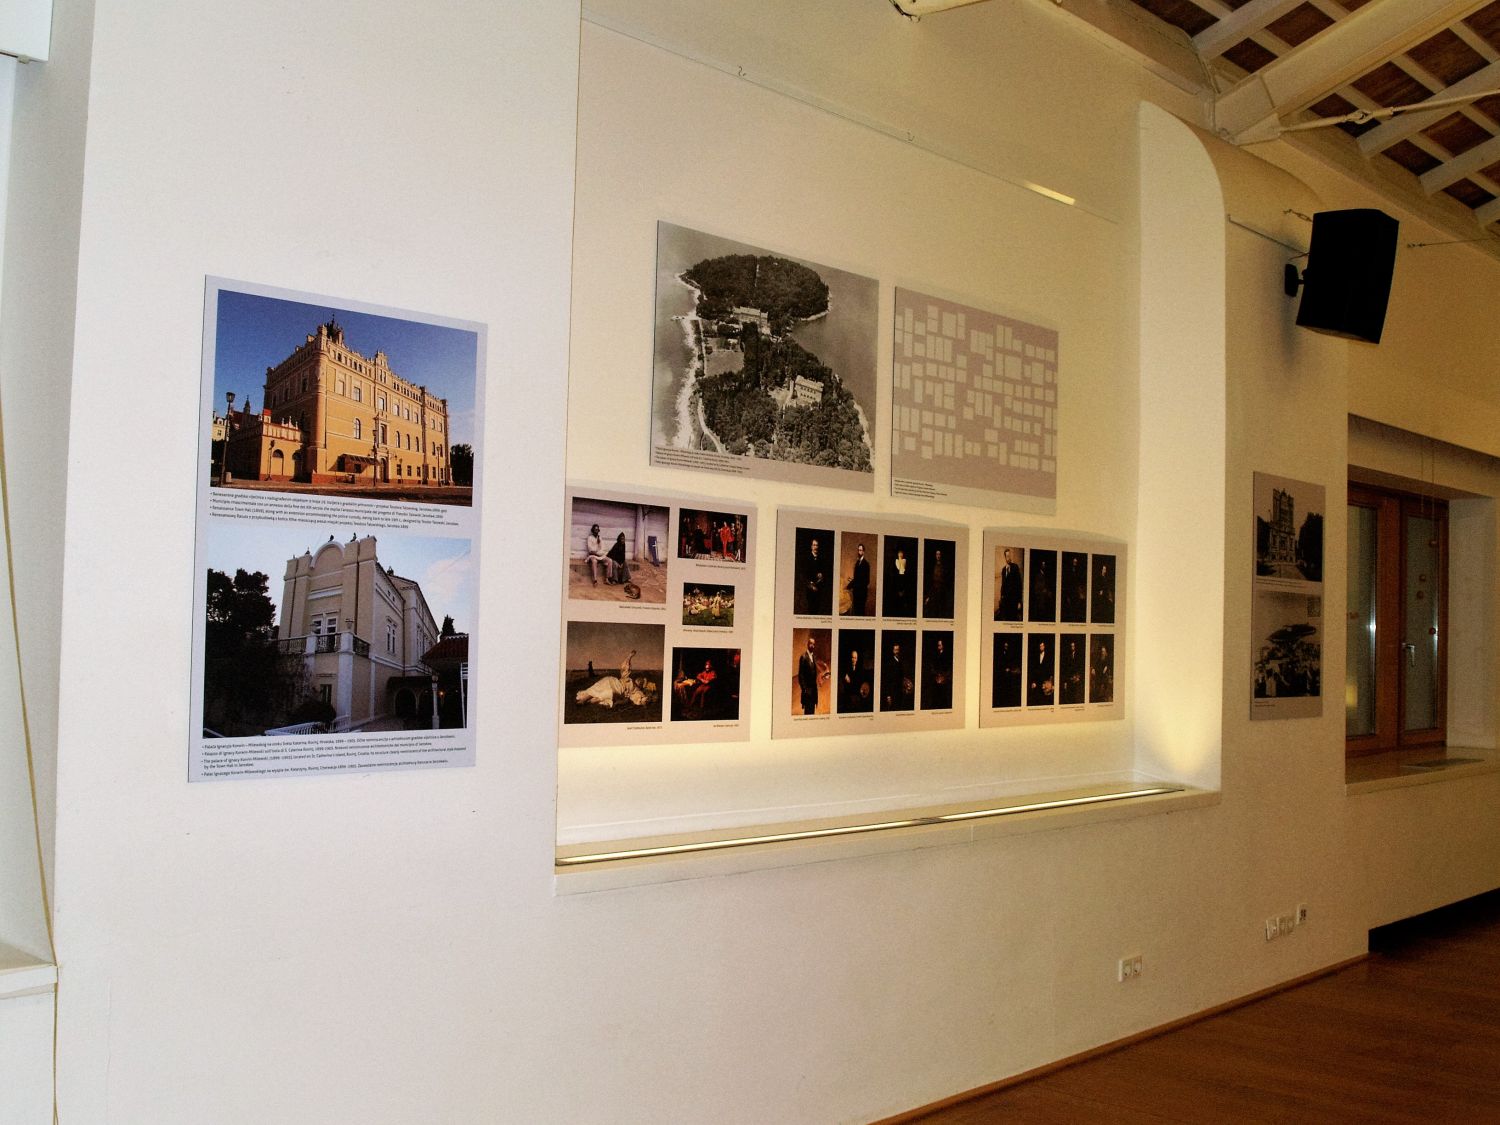 Na zdjęciu widać zbliżenie ściany, na której wiszą obrazy, plasze z tekstami, zdjęcia przedstawiające budynki.